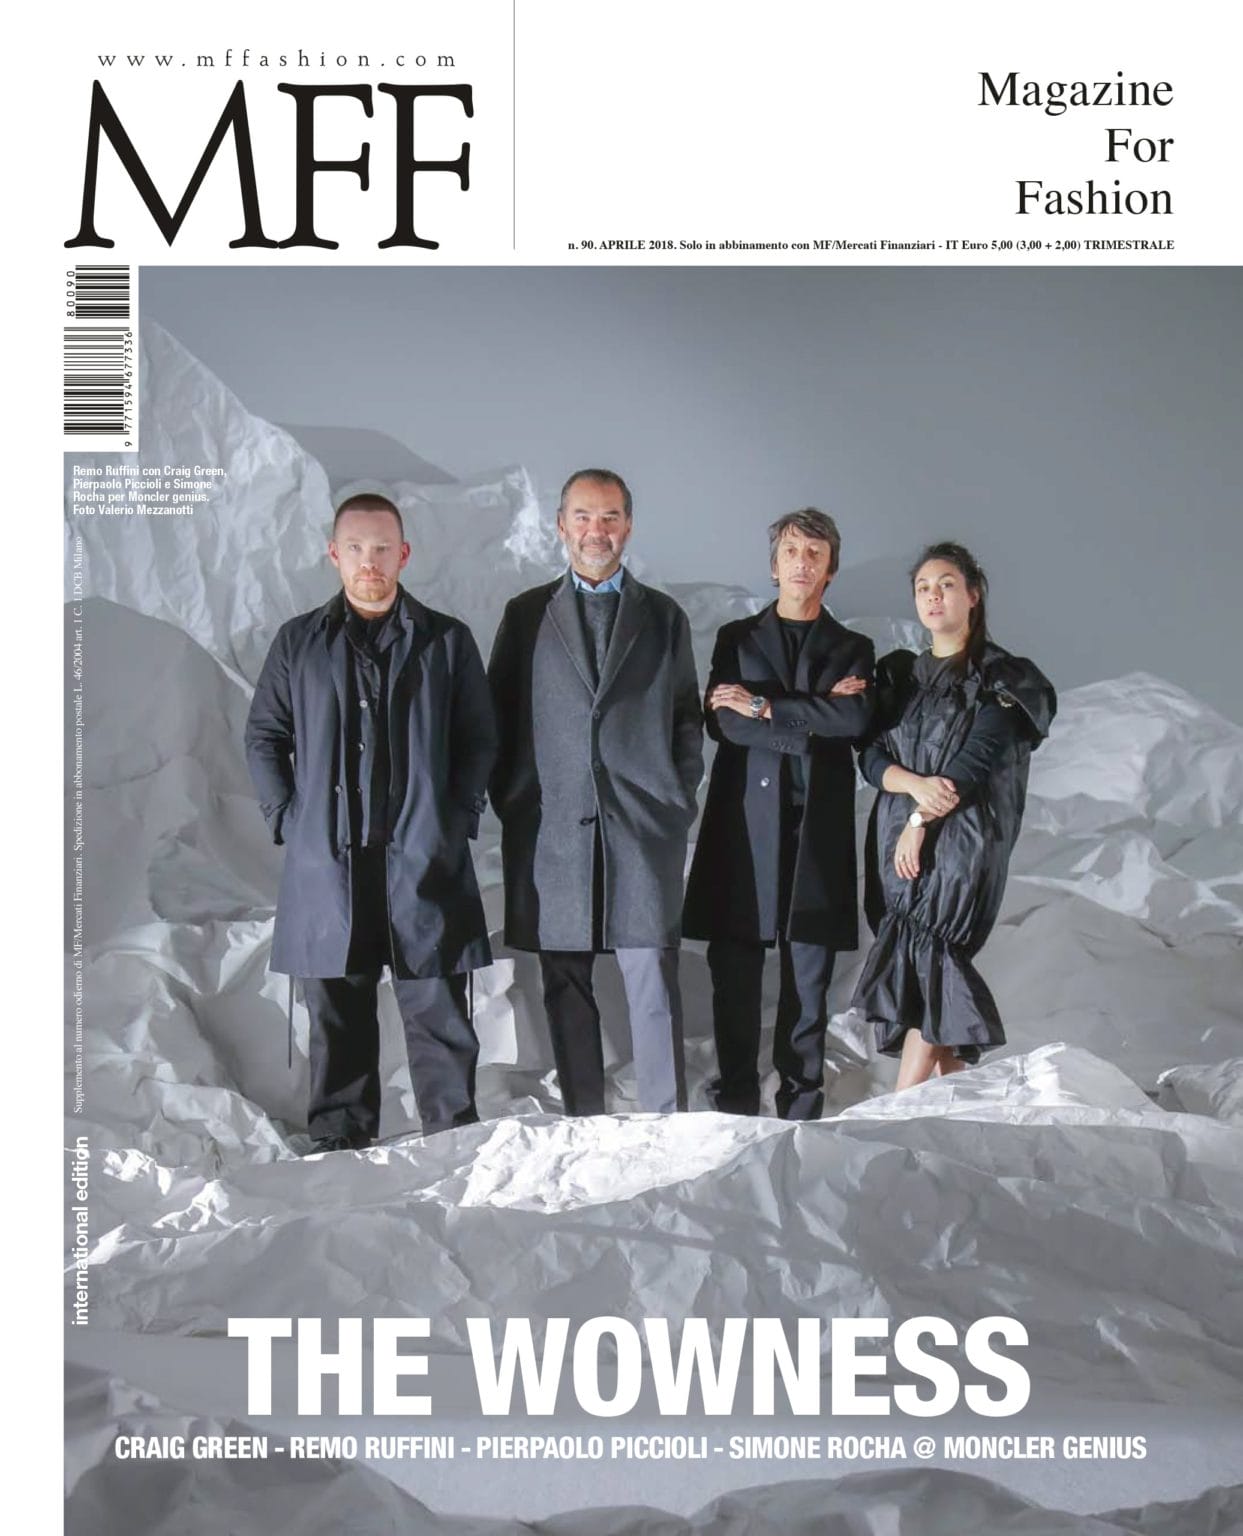 Craig Green, Remo Ruffini, Pier Paolo Piccioli, and Simone Rocha x Moncler Fashion Editorial Shooting, Cover Story for MFFashion. Photo by Valerio Mezzanotti